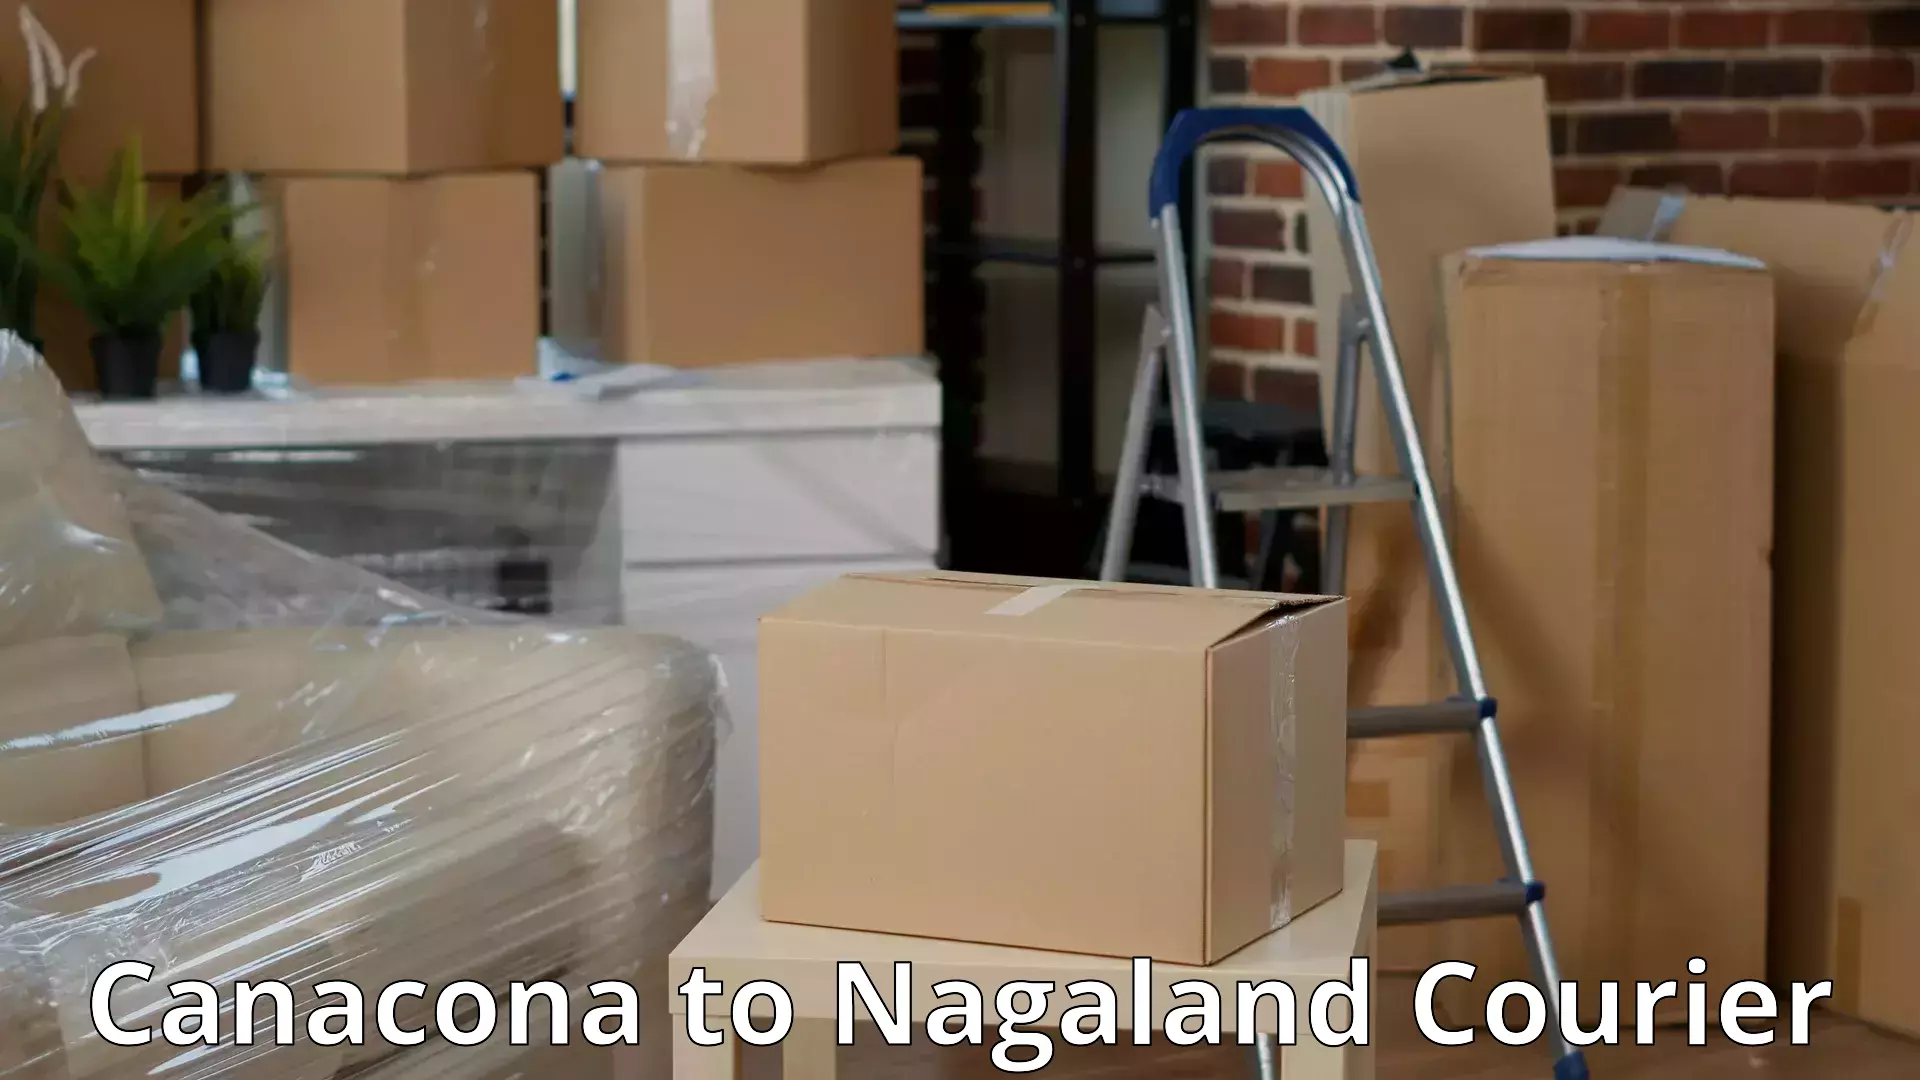 Specialized moving company Canacona to Longleng